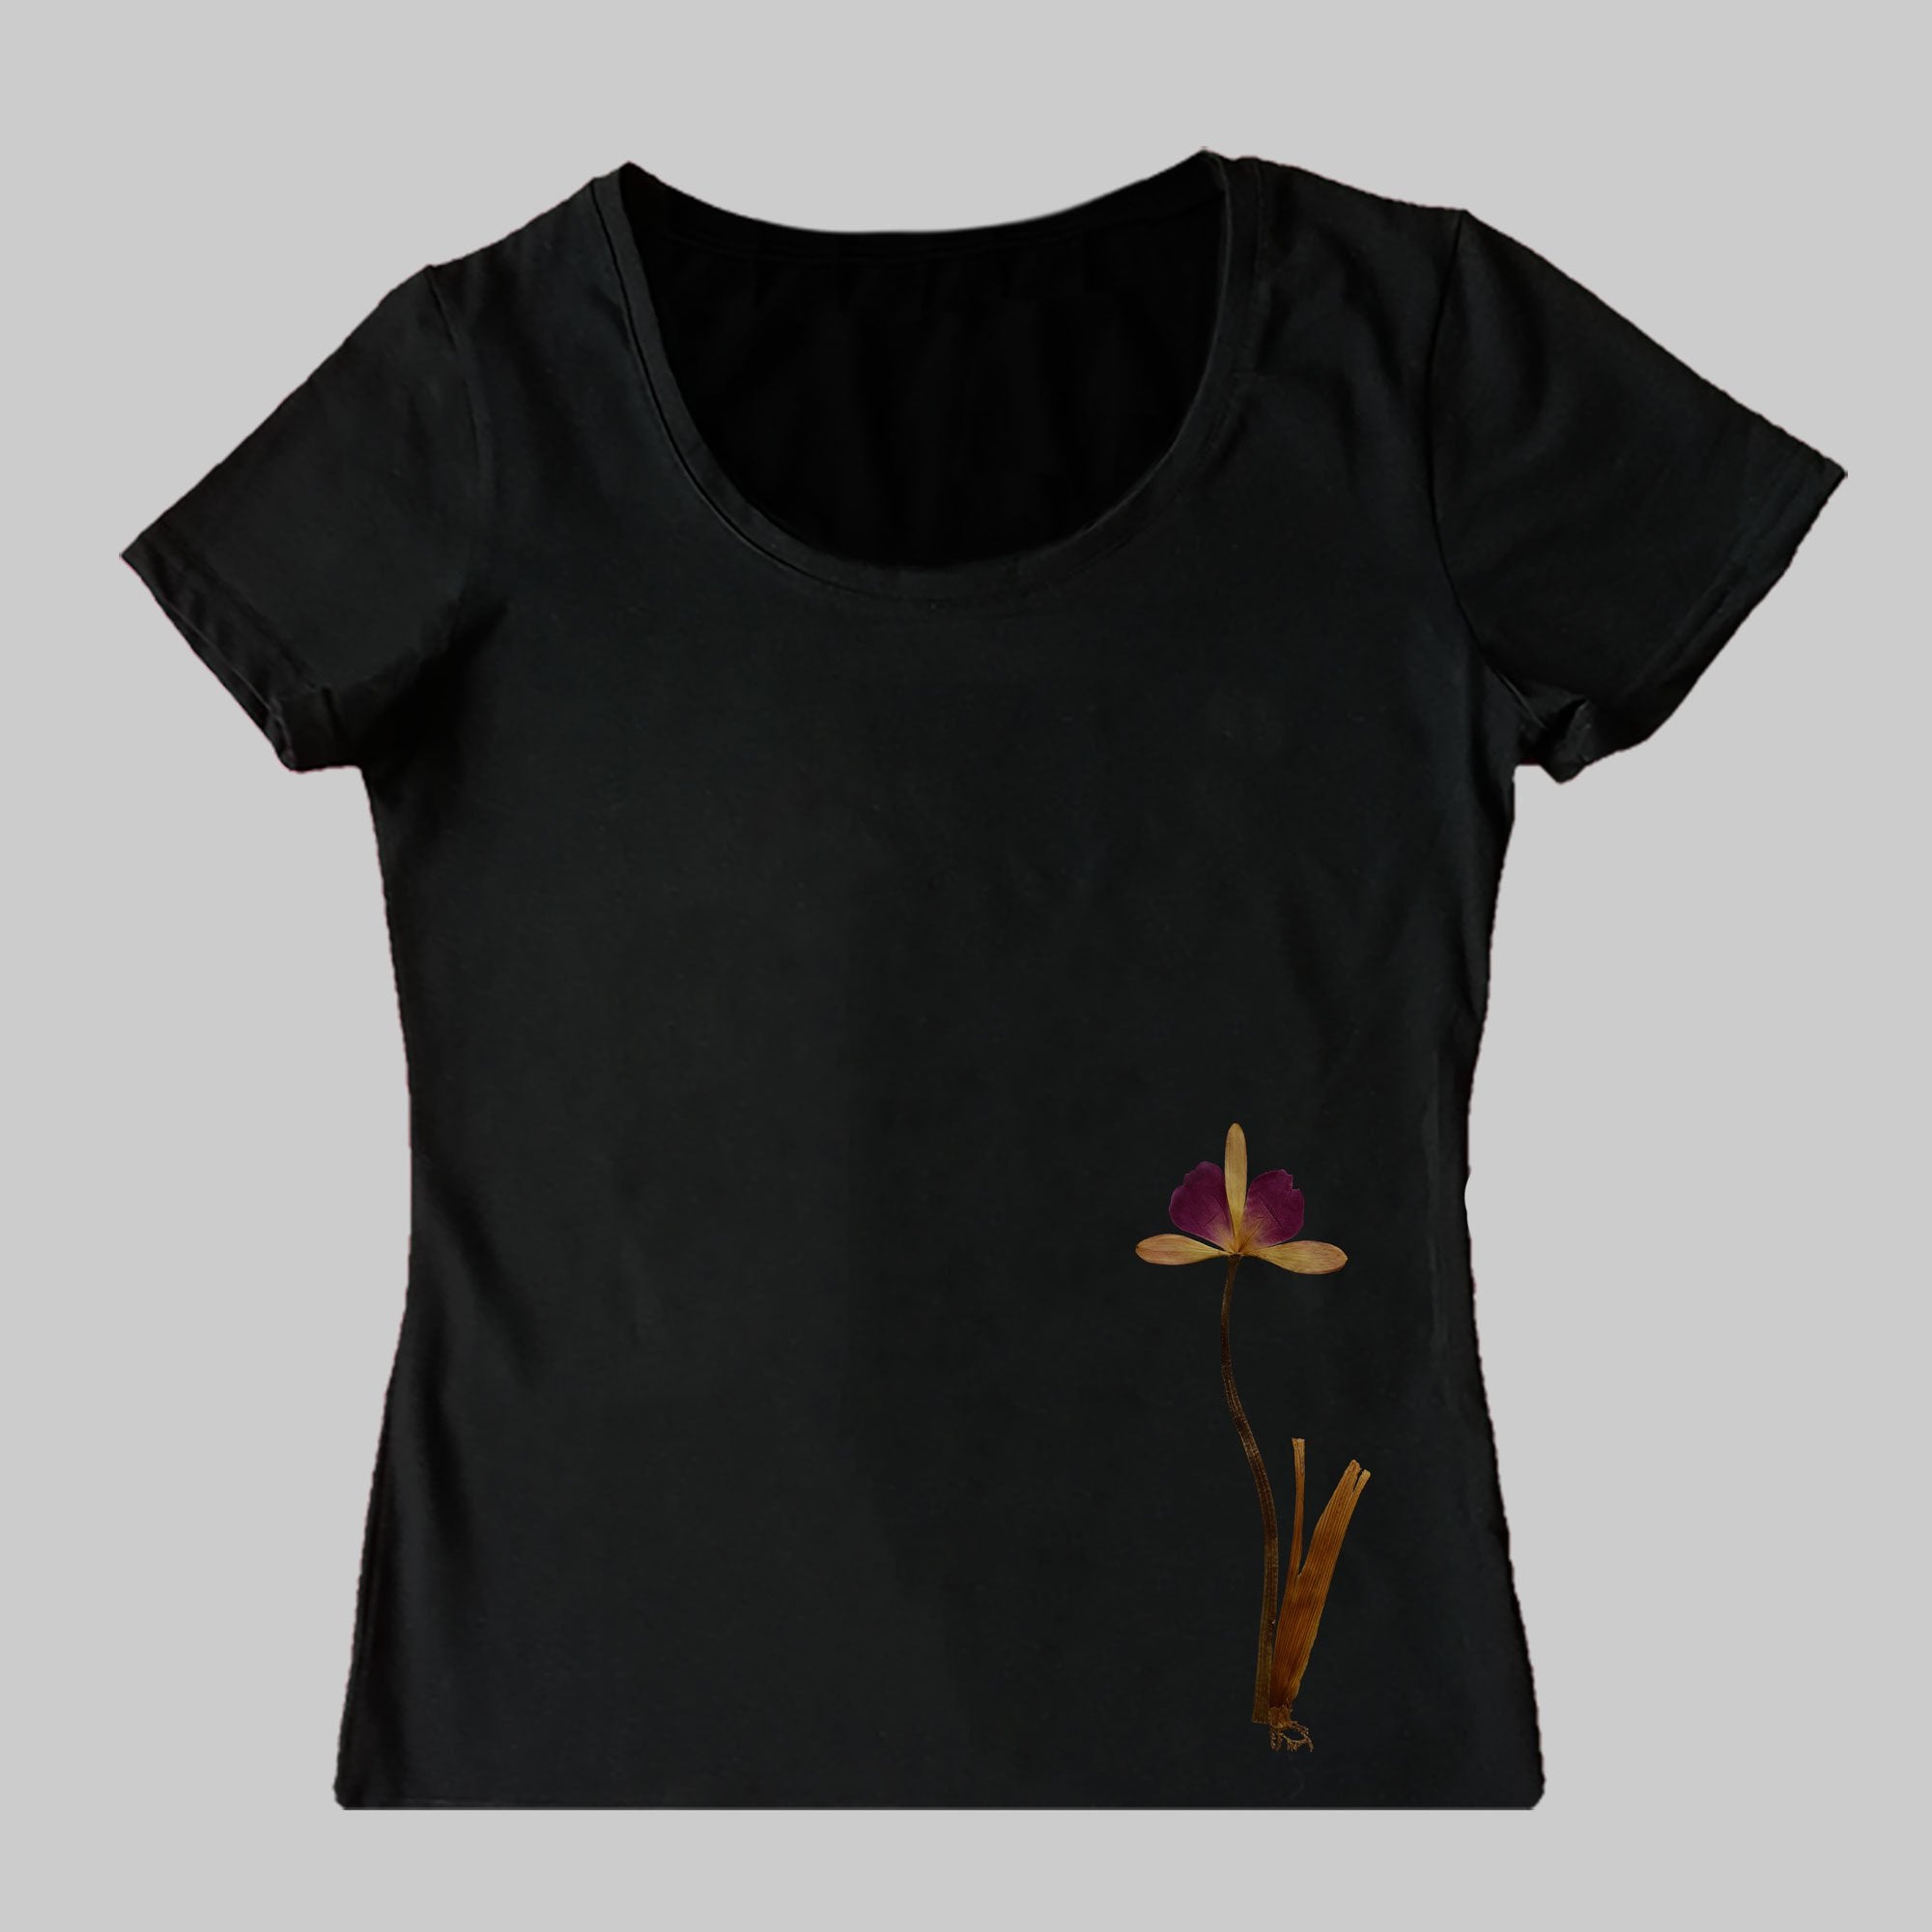 Flower-Like Ornament T-Shirt (Women's)